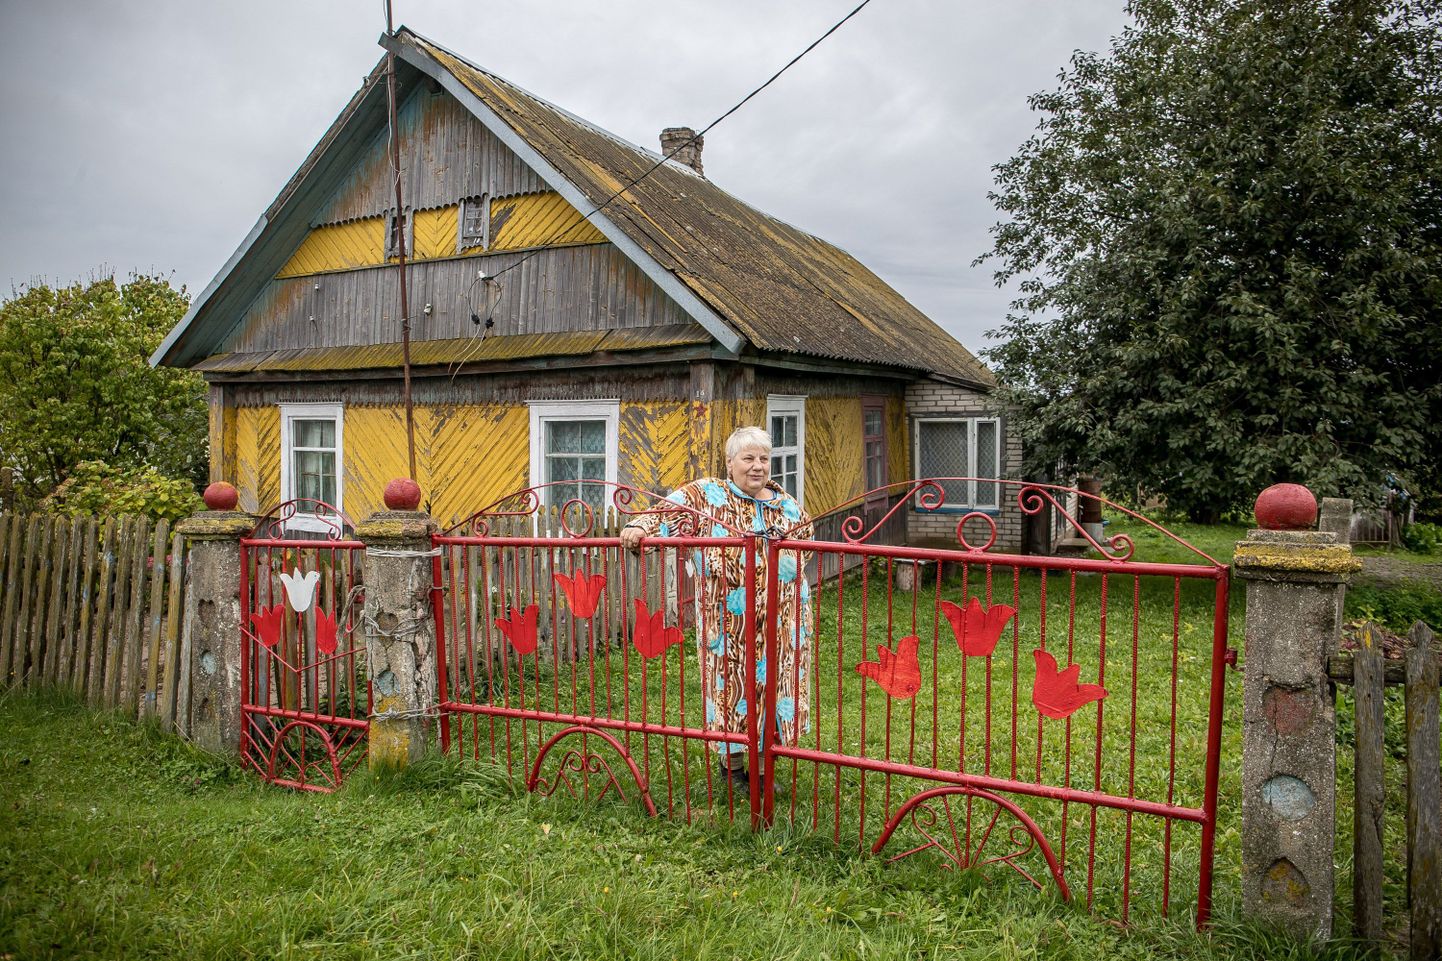 69-aastane Aleksandra elab suvel Minski oblastis Benitsa külas, talvel Maladetšnõi linnas. Pensionil lesknaine saab kuus 140 rubla (63 eurot) pensioni. «Söögiks jätkub, aga maja remondiks küll mitte,» nendib ta. Enne pensionile jäämist töötas naine tehases, kuid sellest ei taha ta pikemalt rääkida.

Aleksandra kasvatab oma aias juurvilju. «Just võtsin viimased porgandid üles. Olen juba nii väetiks jäänud, et pidin selleks taburetil istuma,» räägib naine.